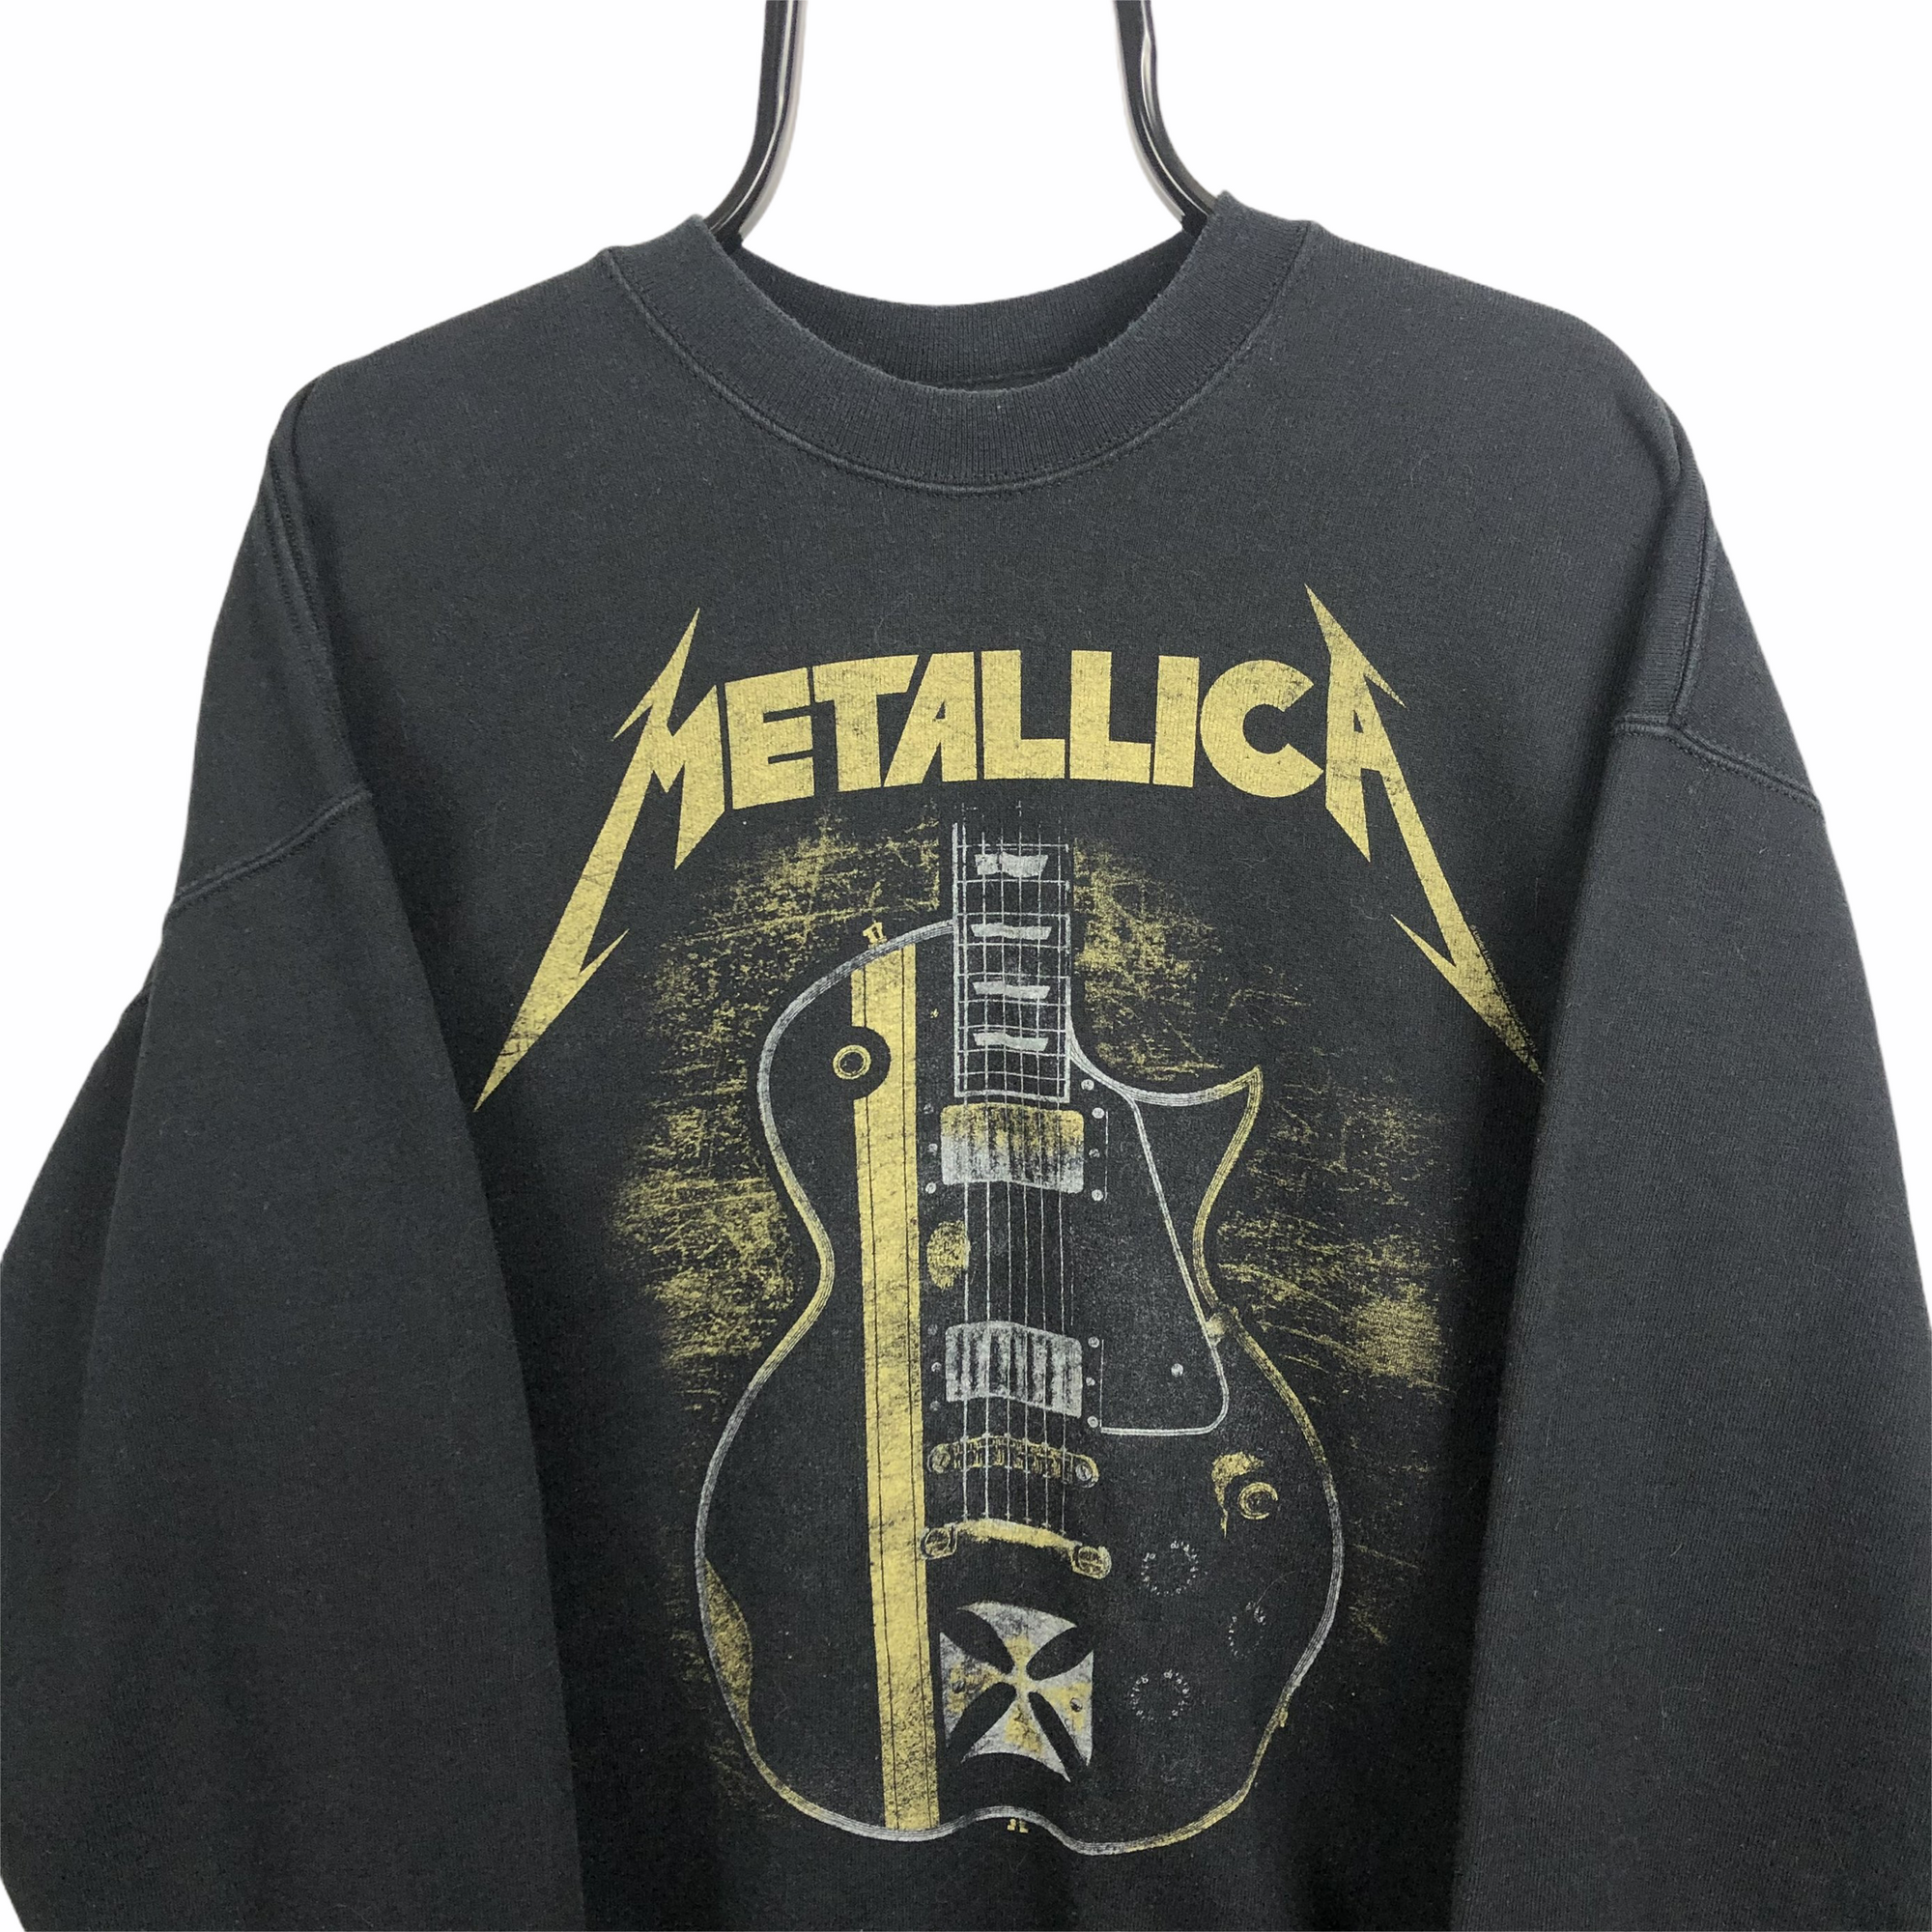 Vintage Metallica Sweatshirt in Black - Men's XL/Women's XXL